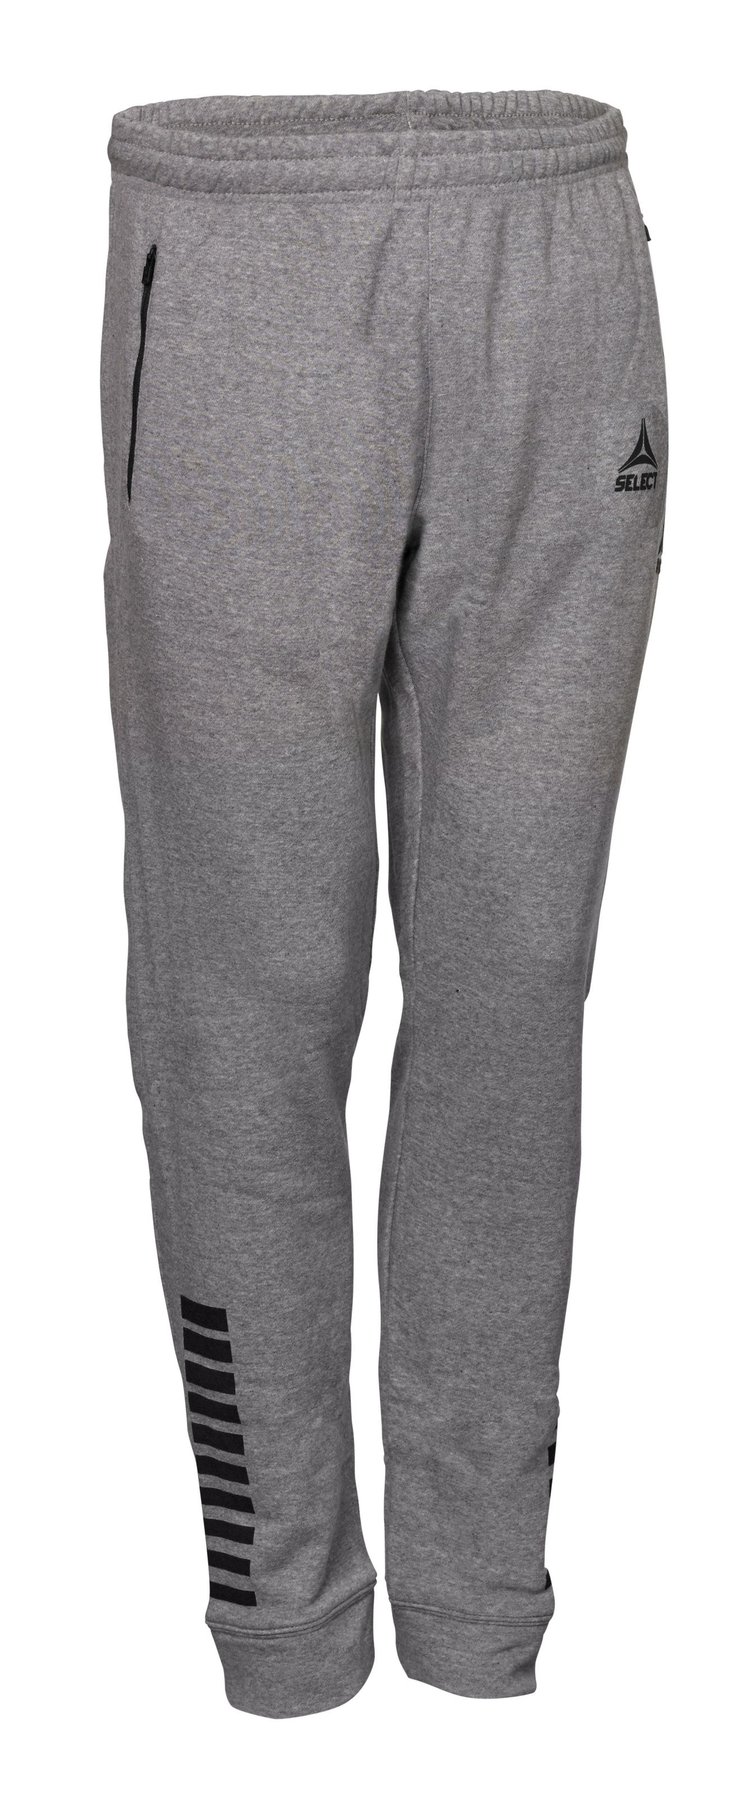 Штани SELECT Oxford sweat pants (504) сірий, 6 років